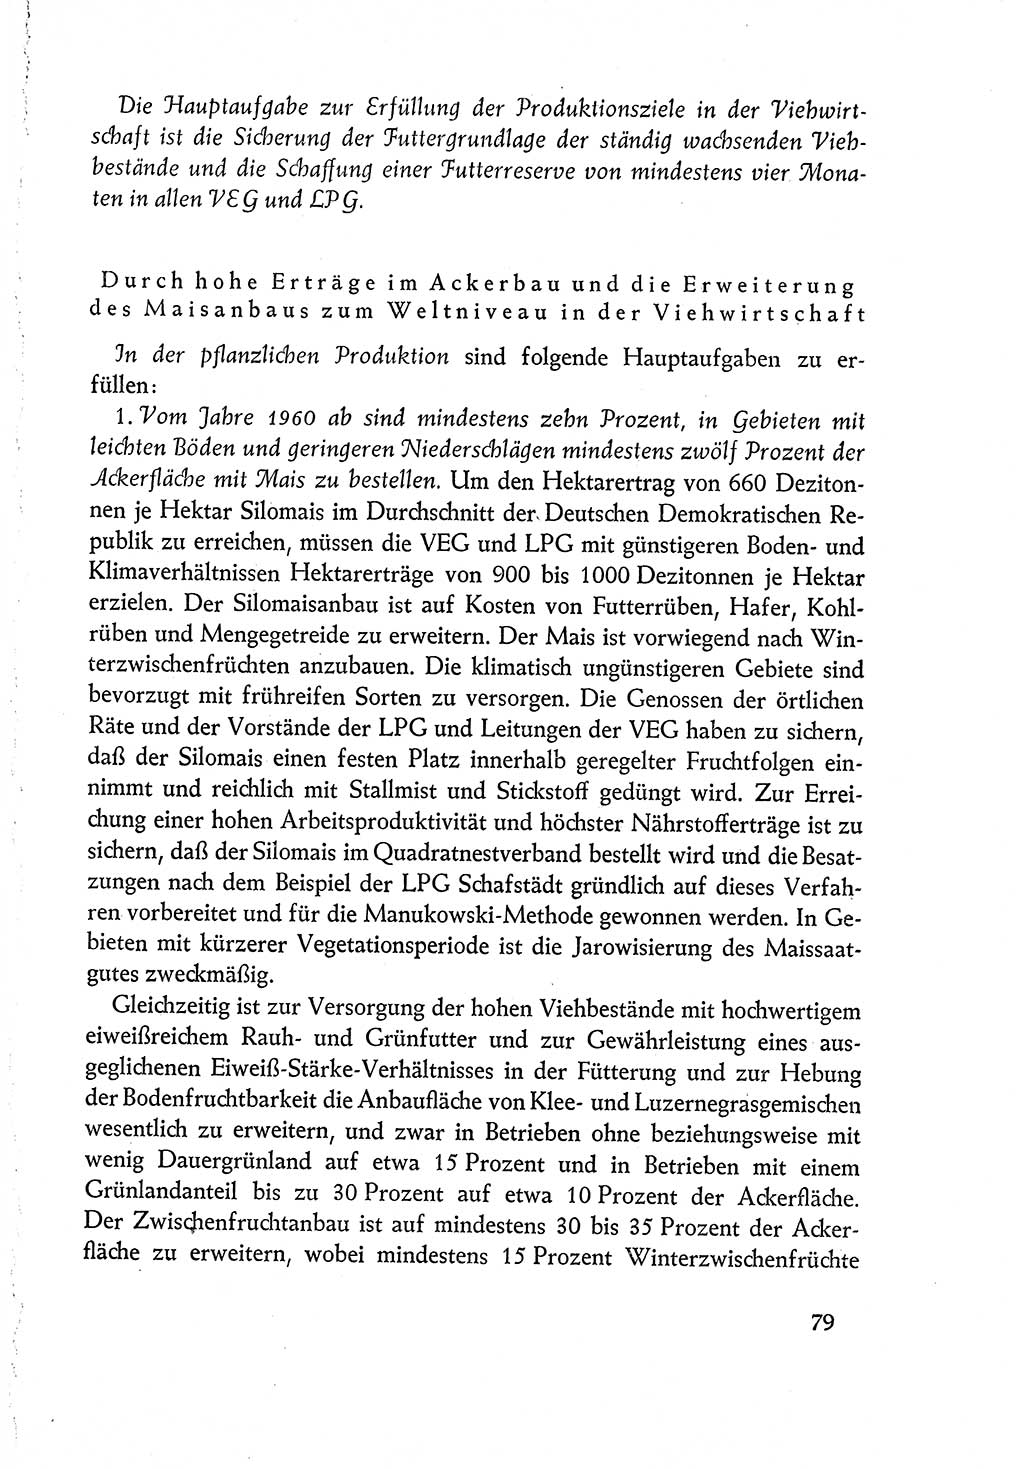 Dokumente der Sozialistischen Einheitspartei Deutschlands (SED) [Deutsche Demokratische Republik (DDR)] 1960-1961, Seite 79 (Dok. SED DDR 1960-1961, S. 79)